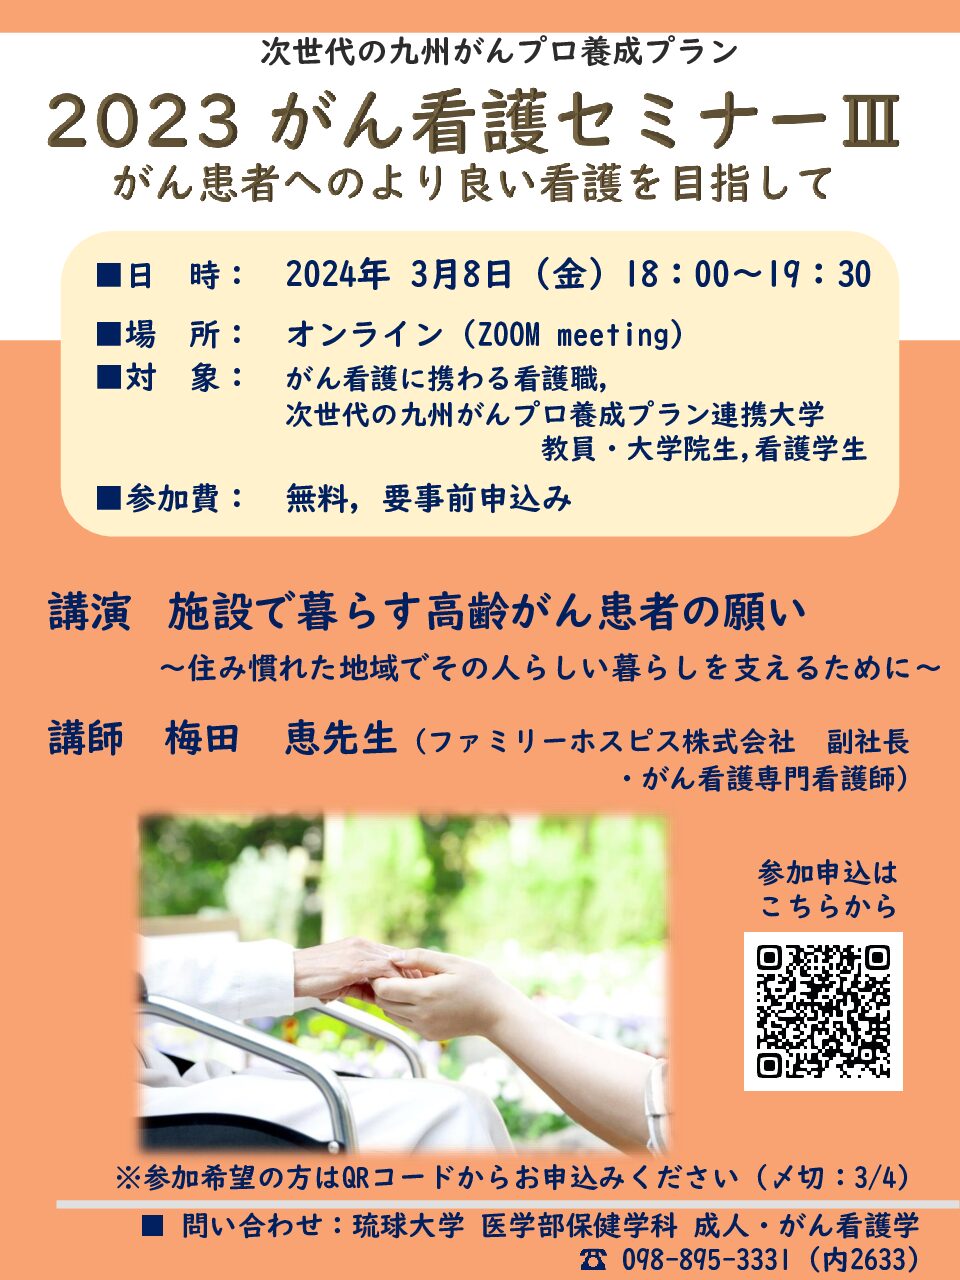 【琉球】2023 がん看護セミナーⅢ（3月8日開催）